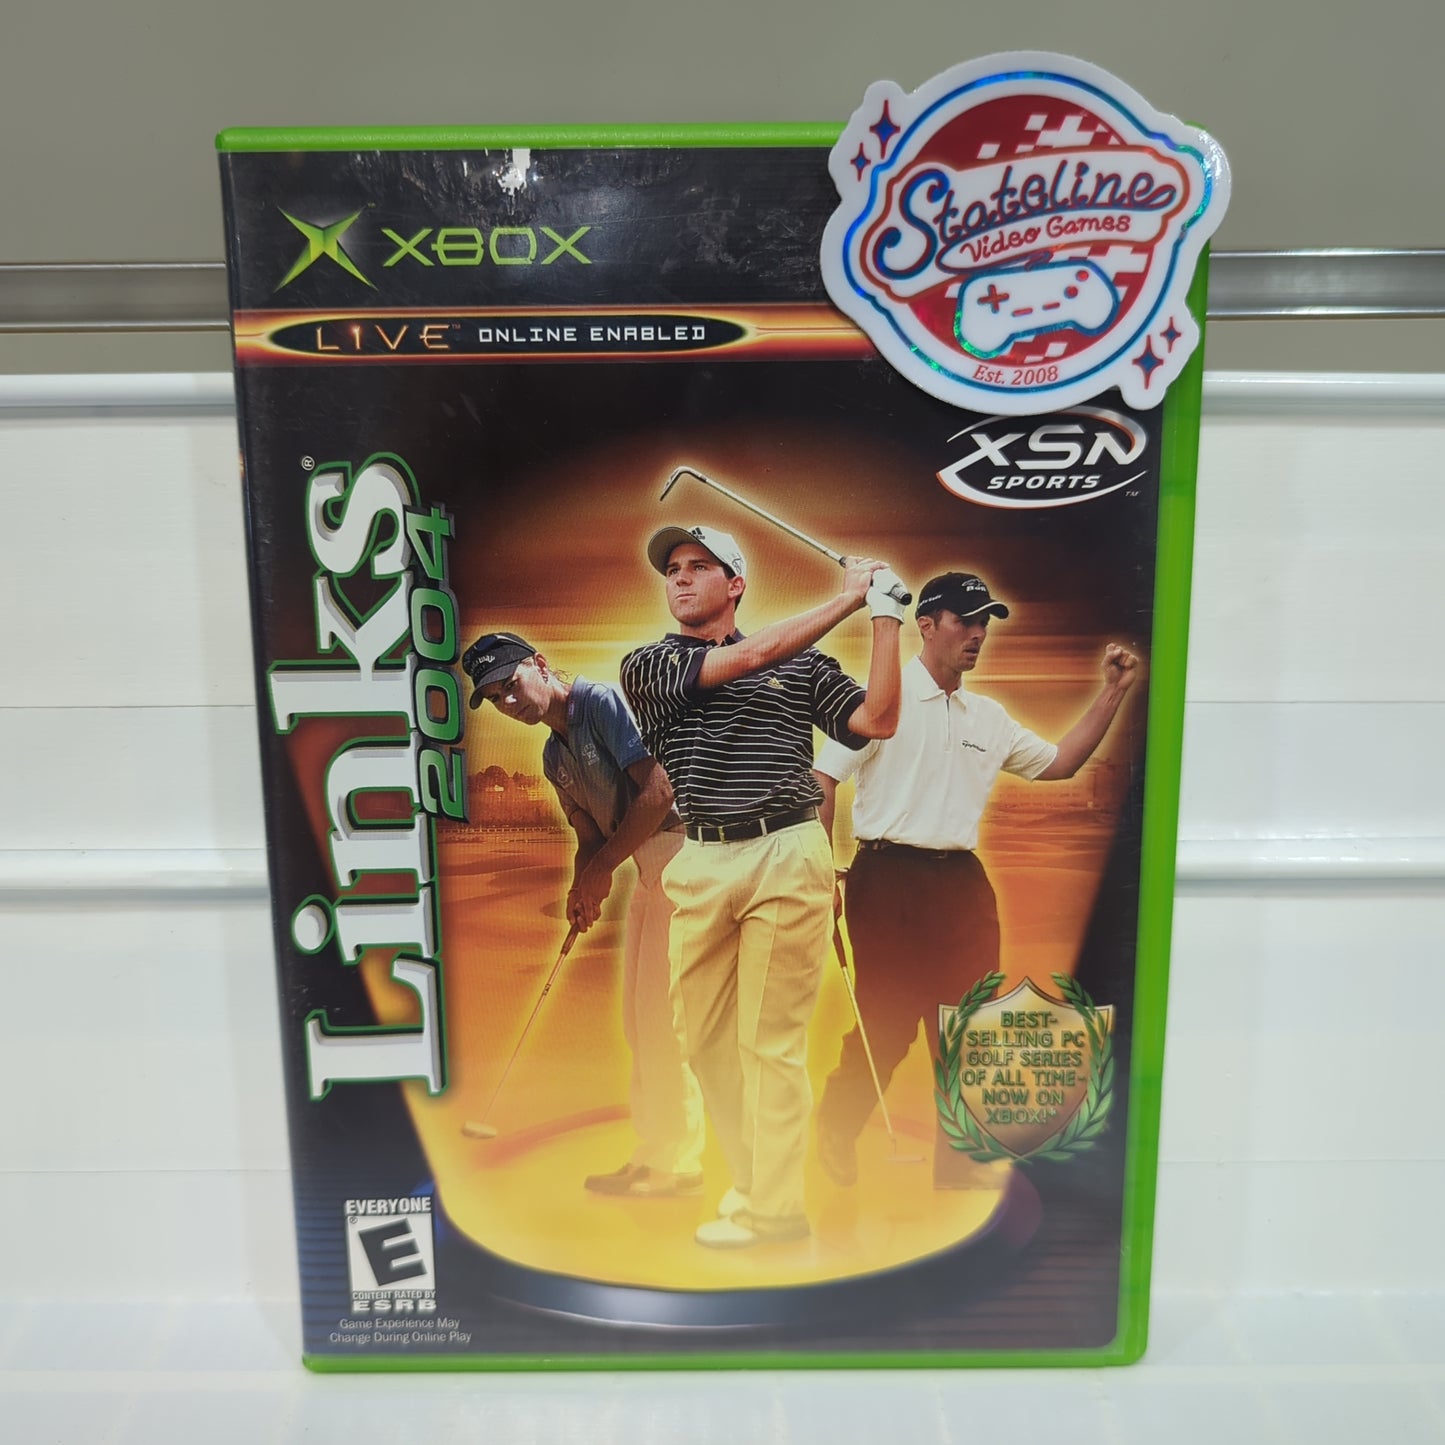 Links 2004 - Xbox